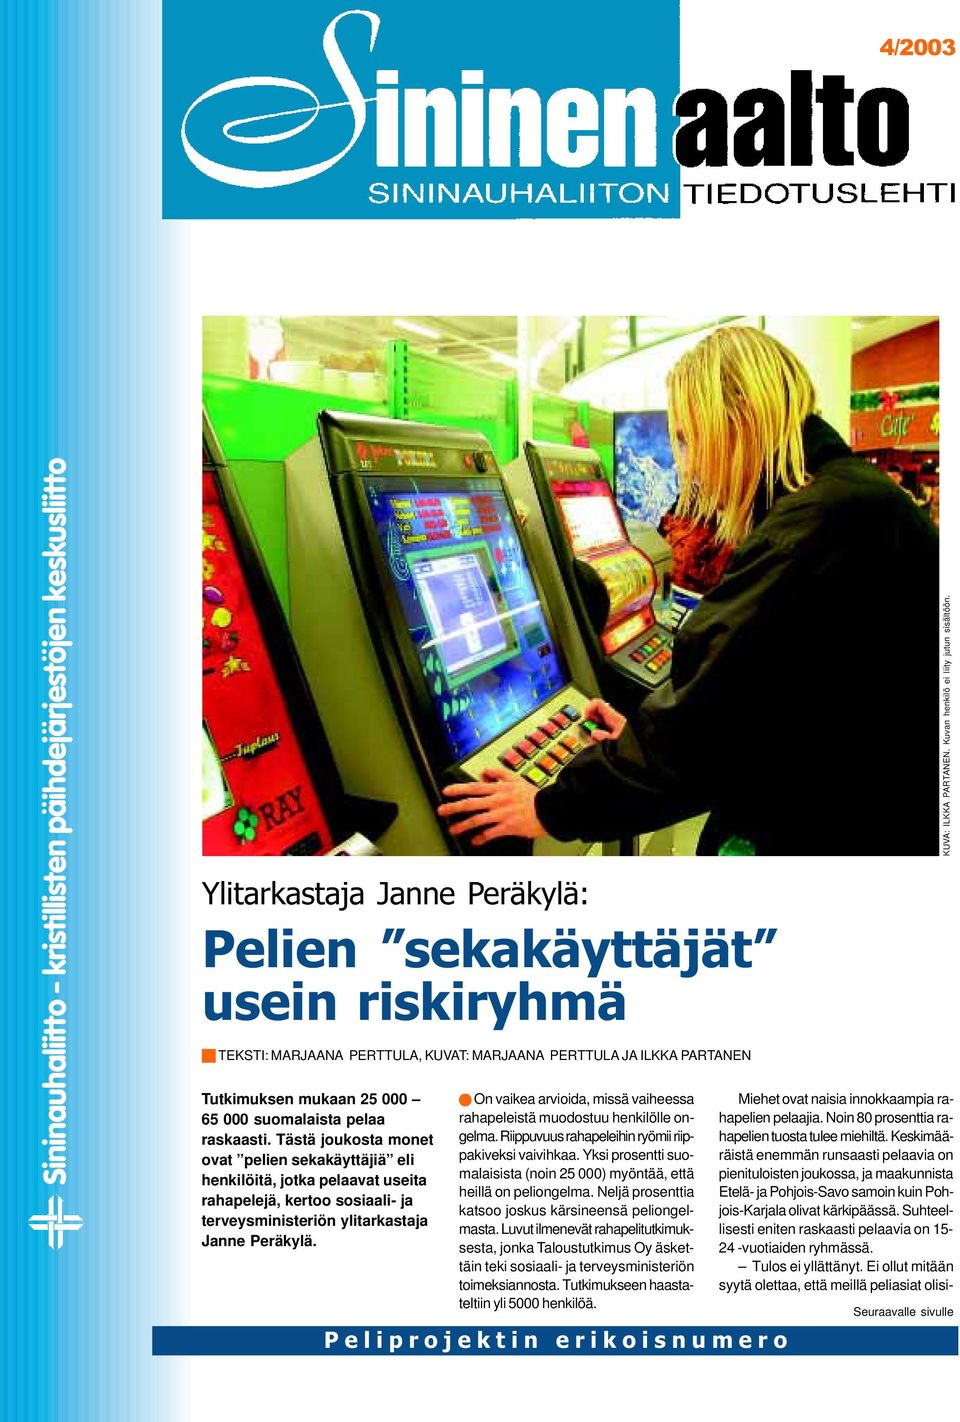 Tästä joukosta monet ovat pelien sekakäyttäjiä eli henkilöitä, jotka pelaavat useita rahapelejä, kertoo sosiaali- ja terveysministeriön ylitarkastaja Janne Peräkylä.